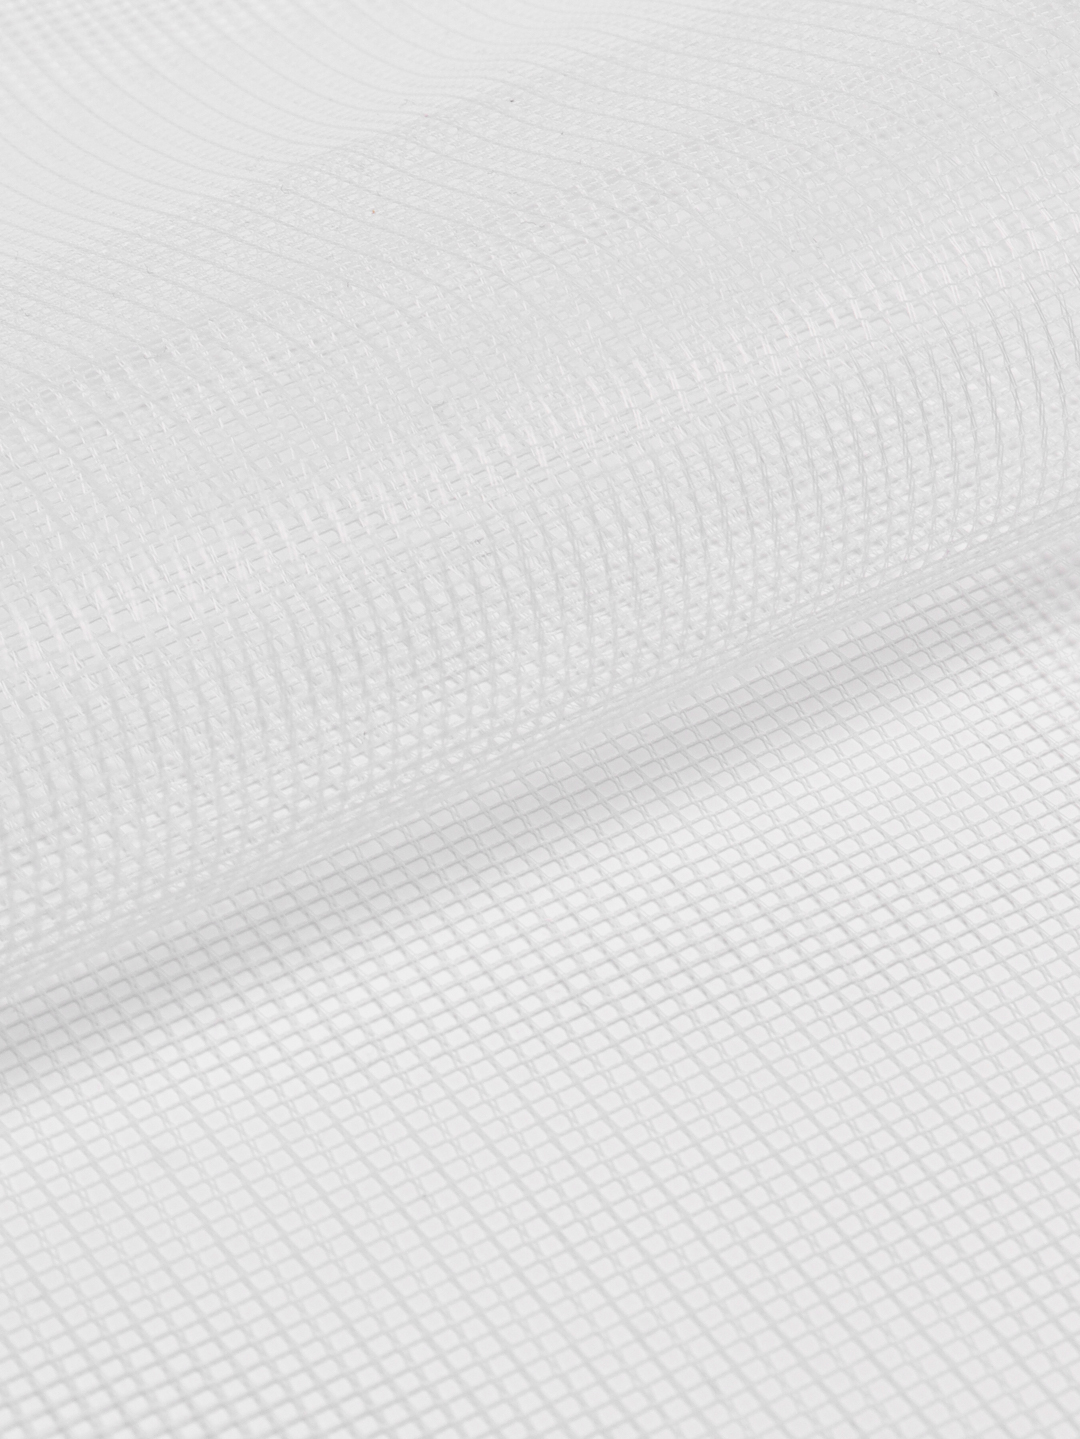 Сетка для глажки глажения белья сорочек ткань марля утюга гладильной .